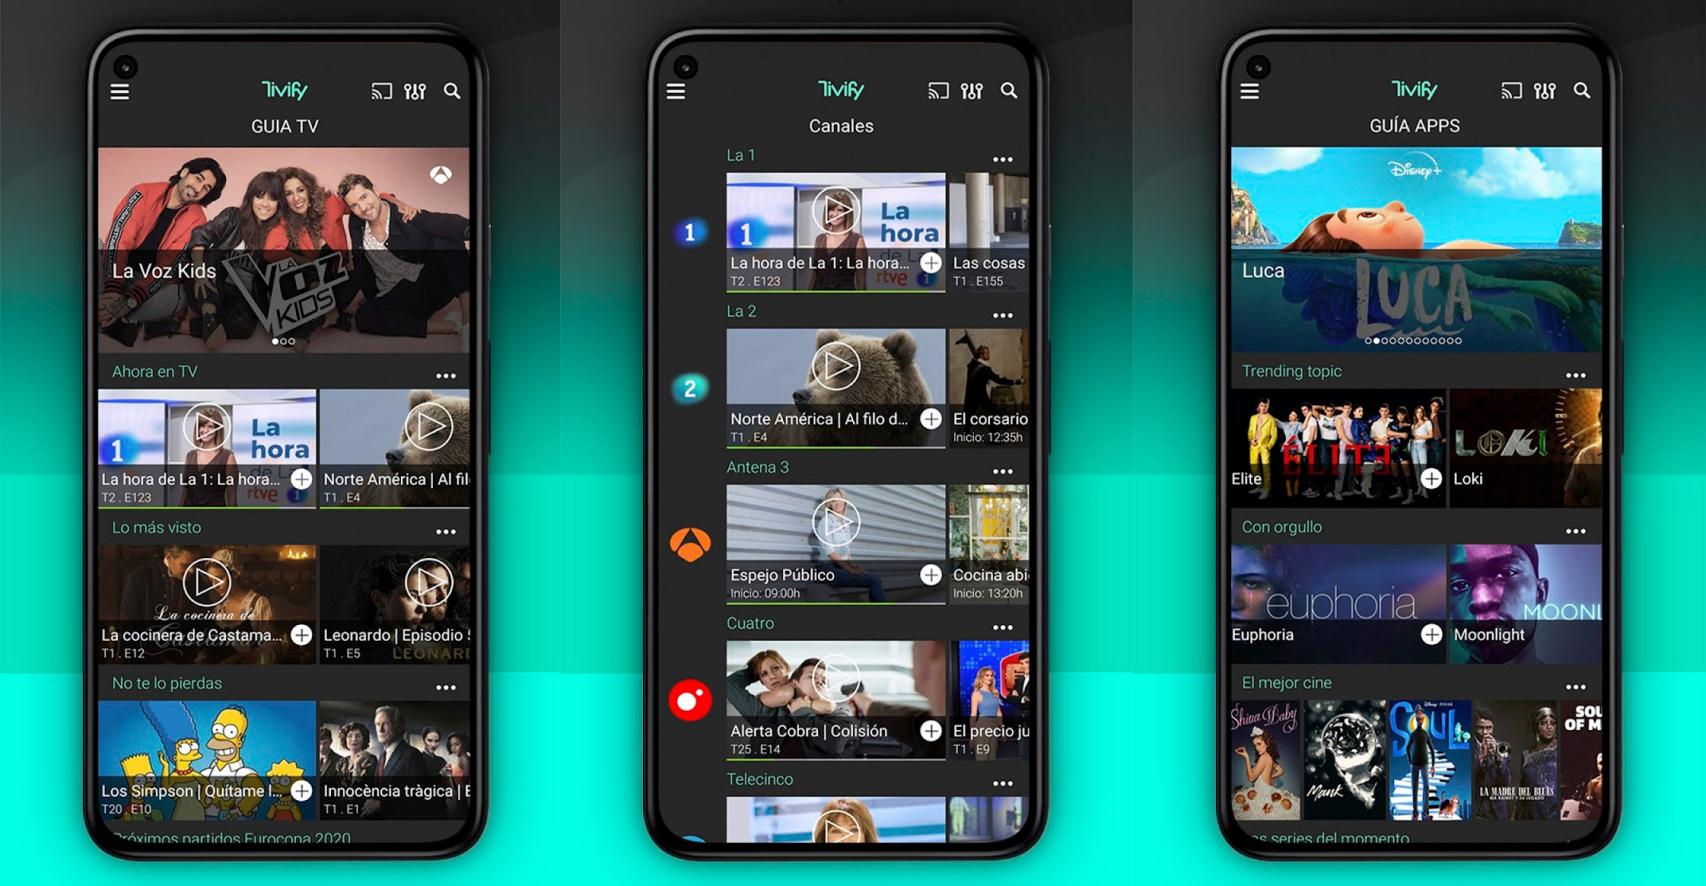 Probamos Tivify en Android TV: una genial forma de ver la TDT